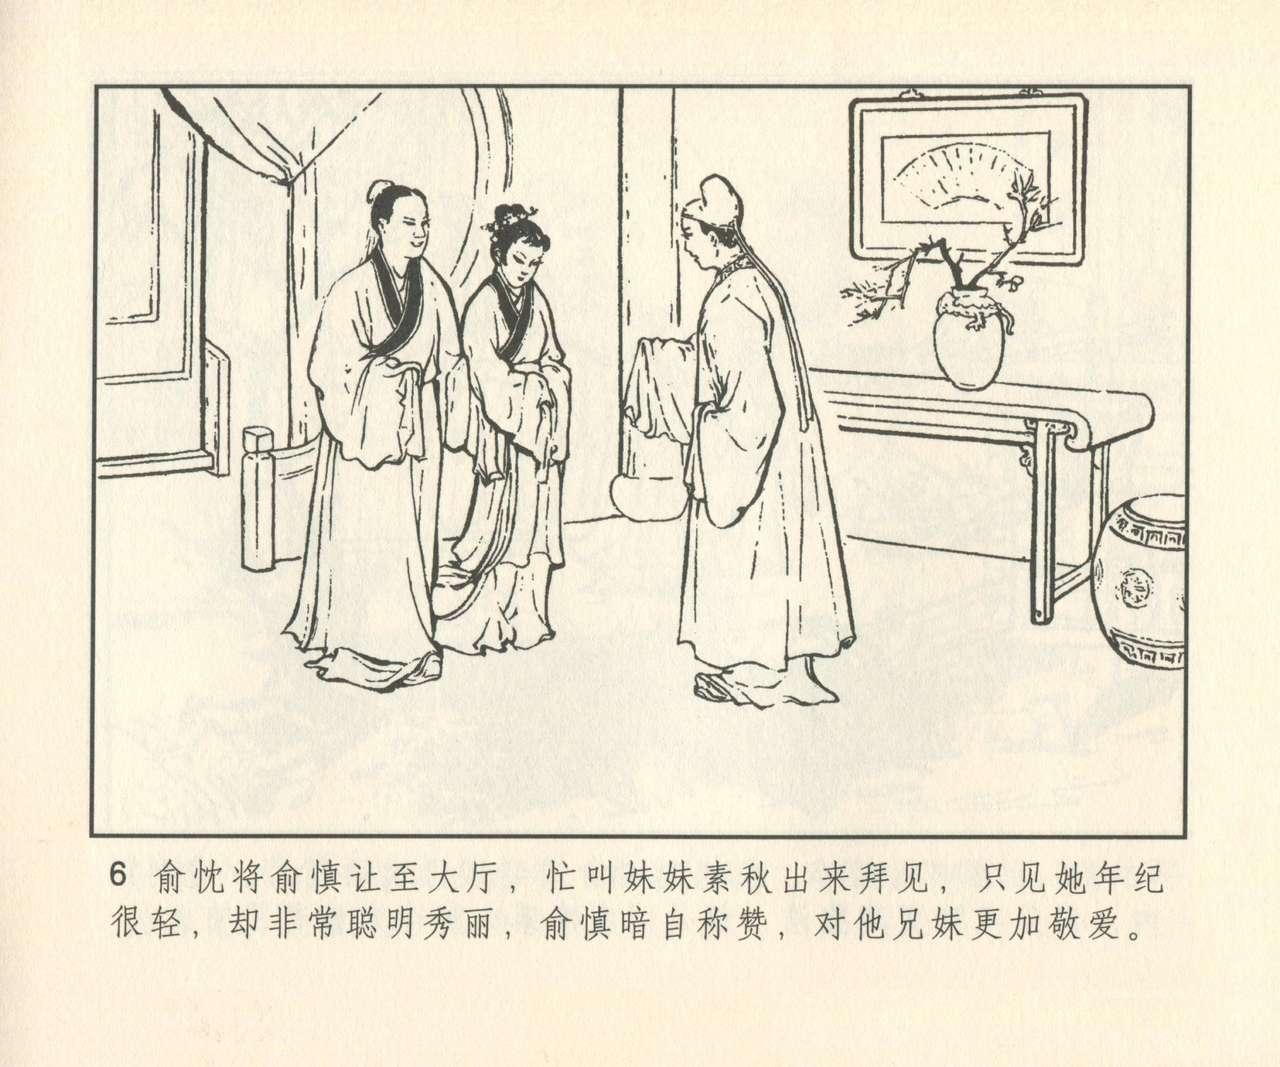 聊斋志异 张玮等绘 天津人民美术出版社 卷二十一 ~ 三十 286